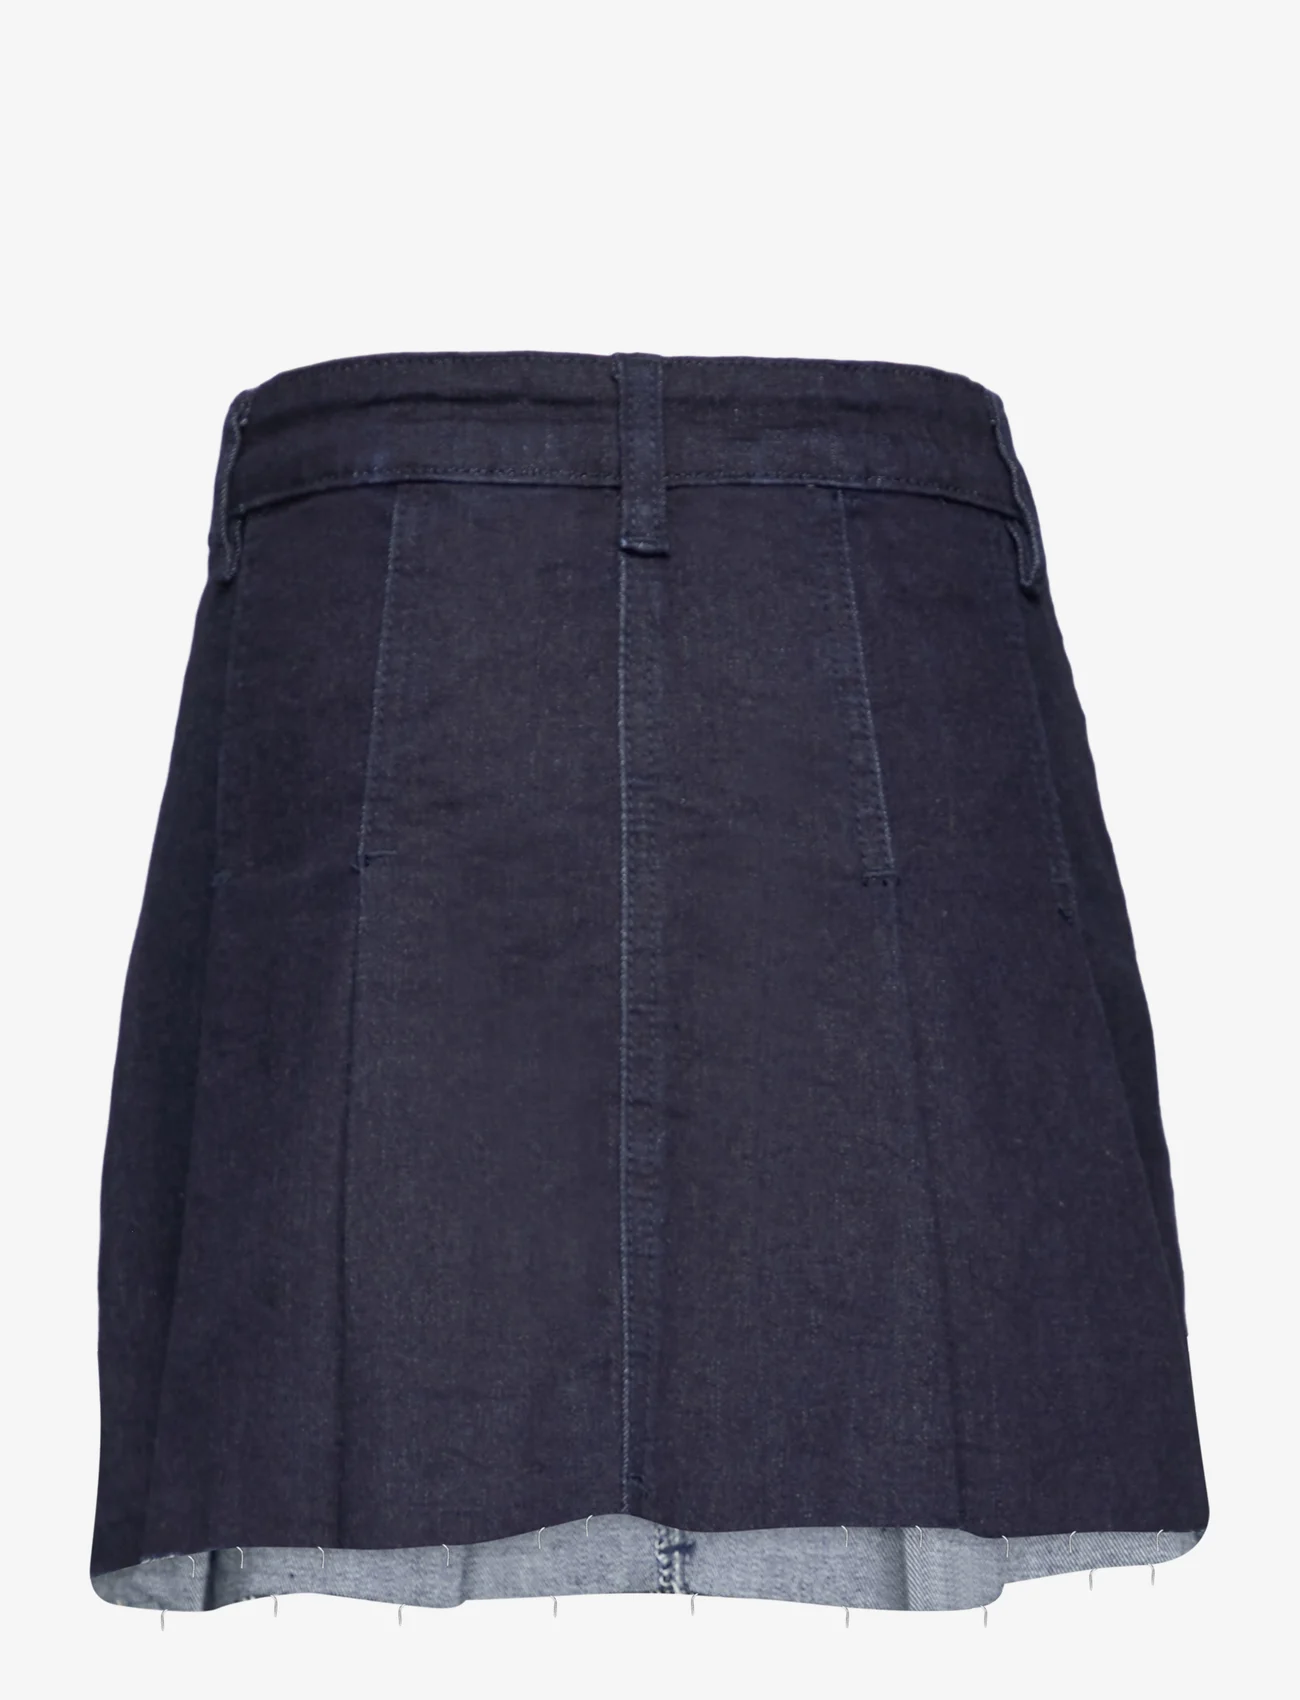 Sofie Schnoor Young - Skirt - džinsiniai sijonai - dark blue - 1